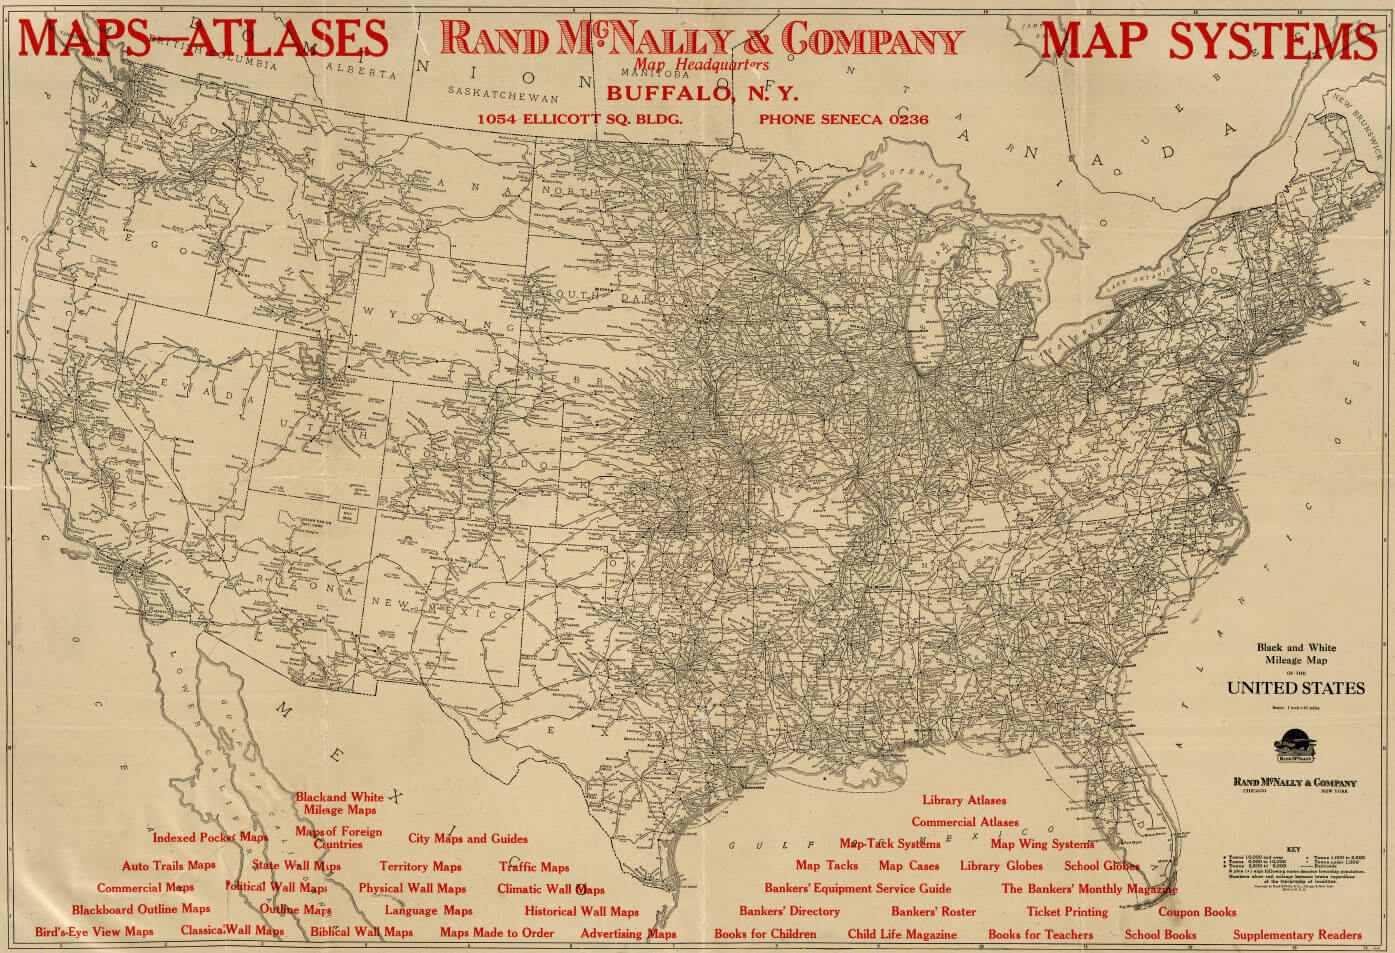 Vereinigte Staaten milage geschichte karte